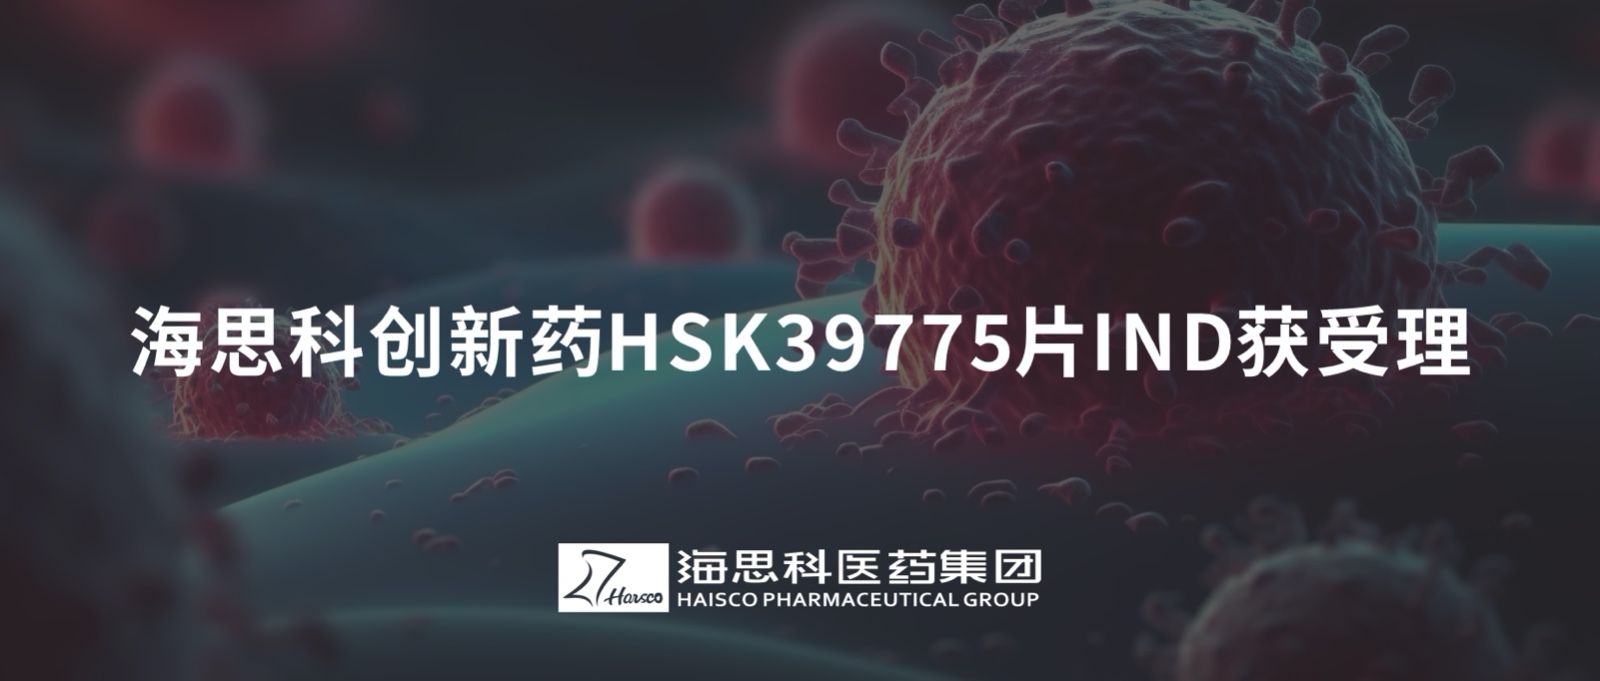 金沙贵宾3777线路检测中心创新药HSK39775片IND获受理